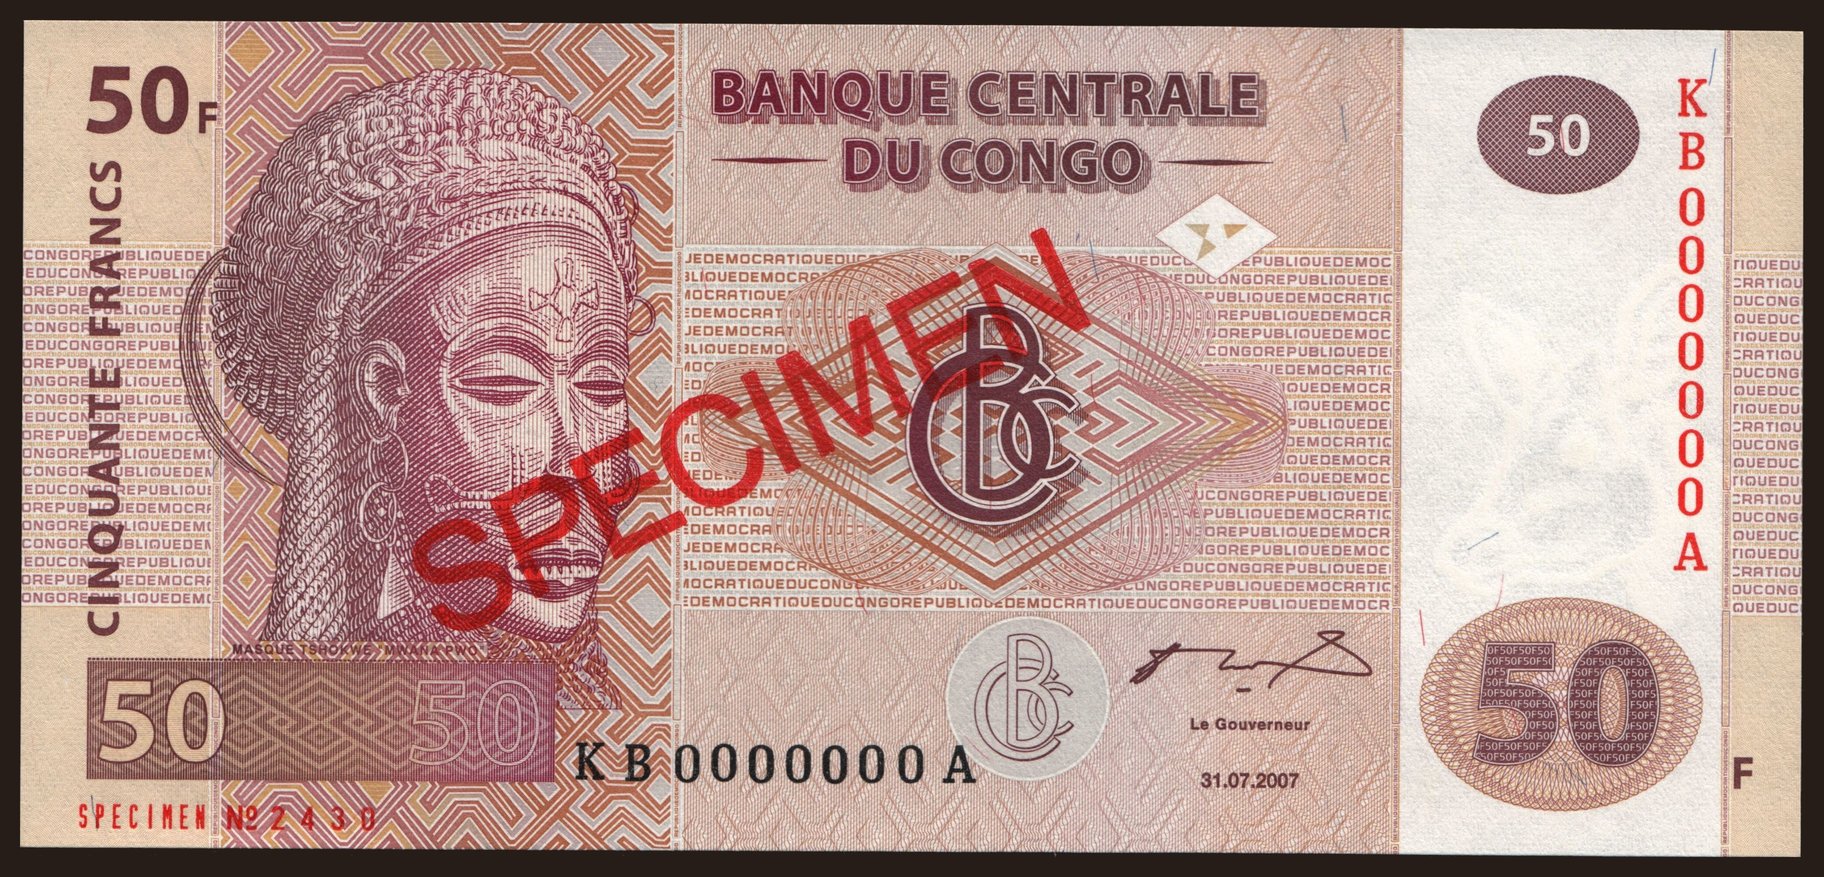 50 francs, 2007, SPECIMEN